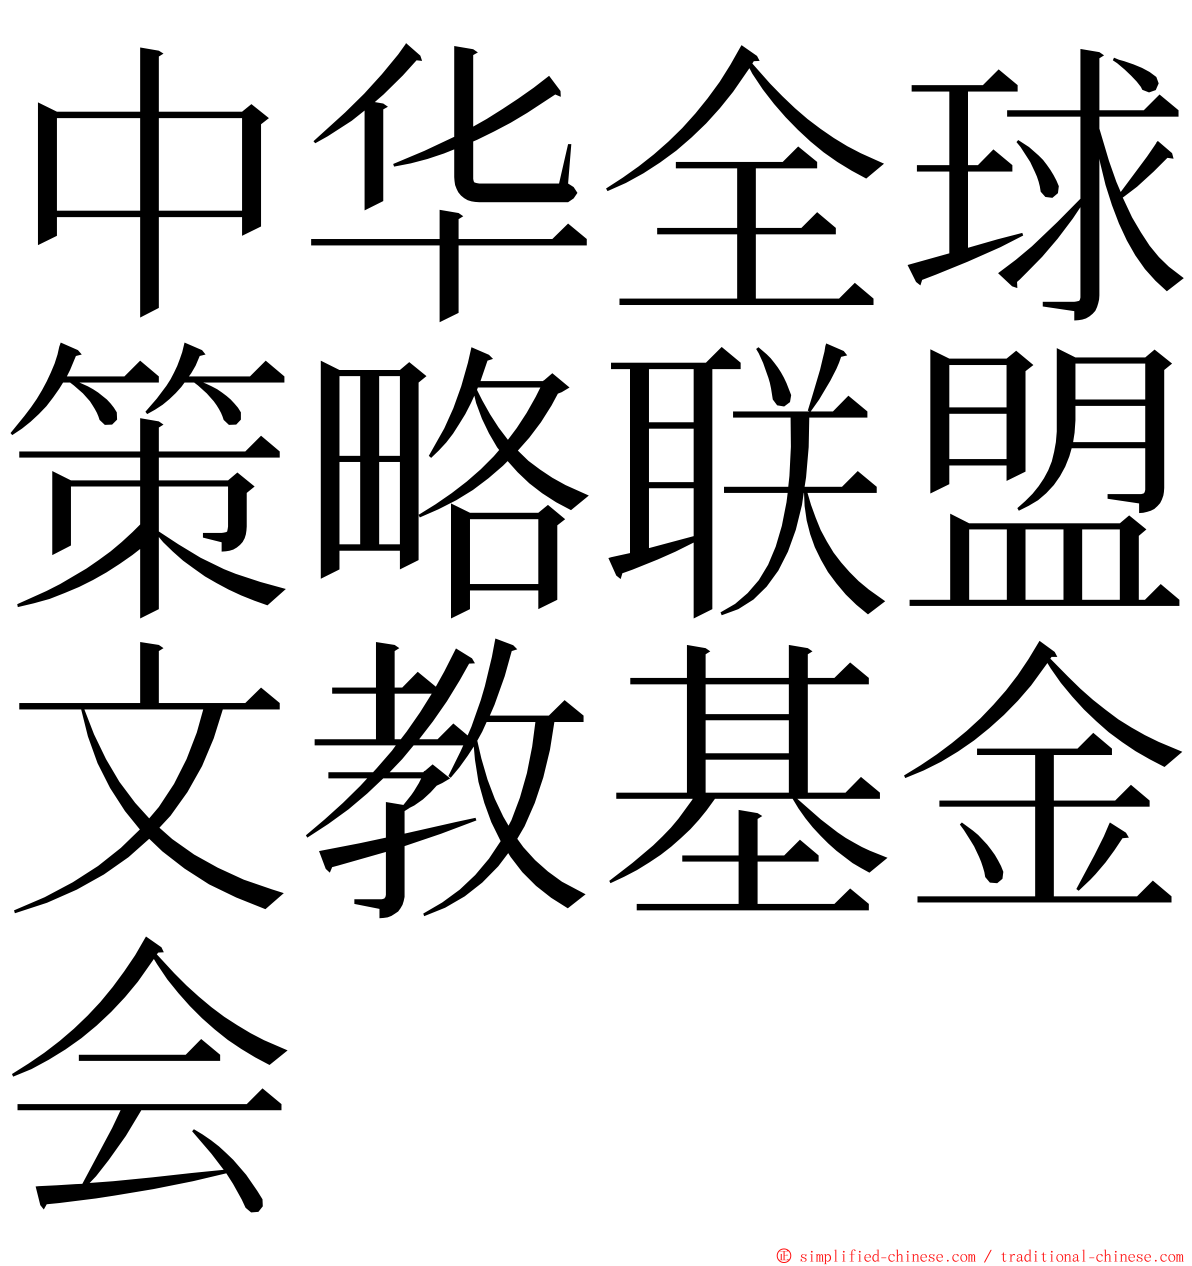 中华全球策略联盟文教基金会 ming font